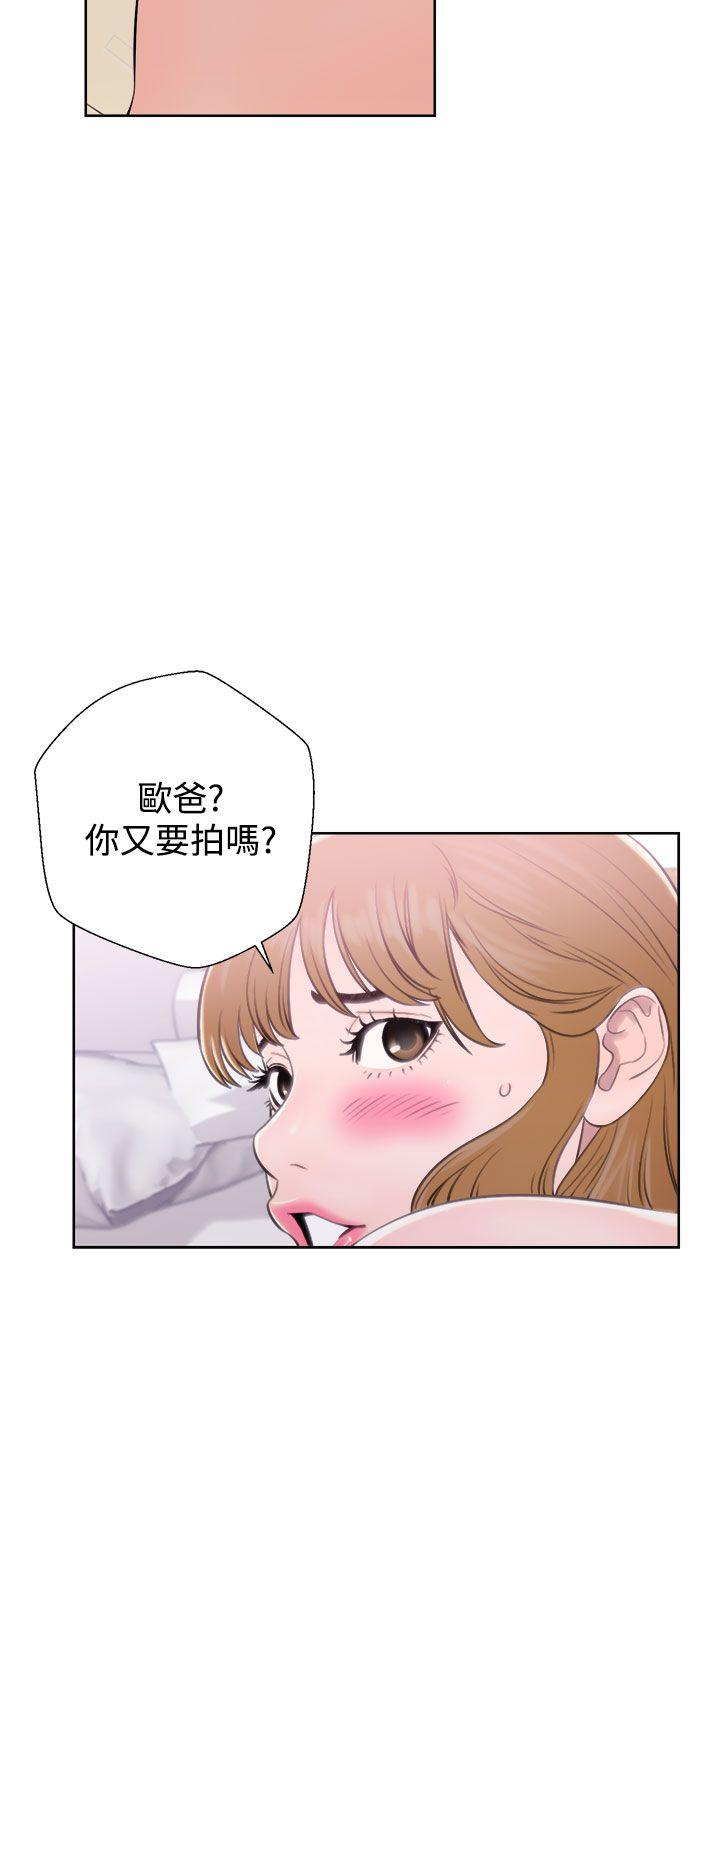 韩国污漫画 青春:逆齡小鮮肉 第7话 32